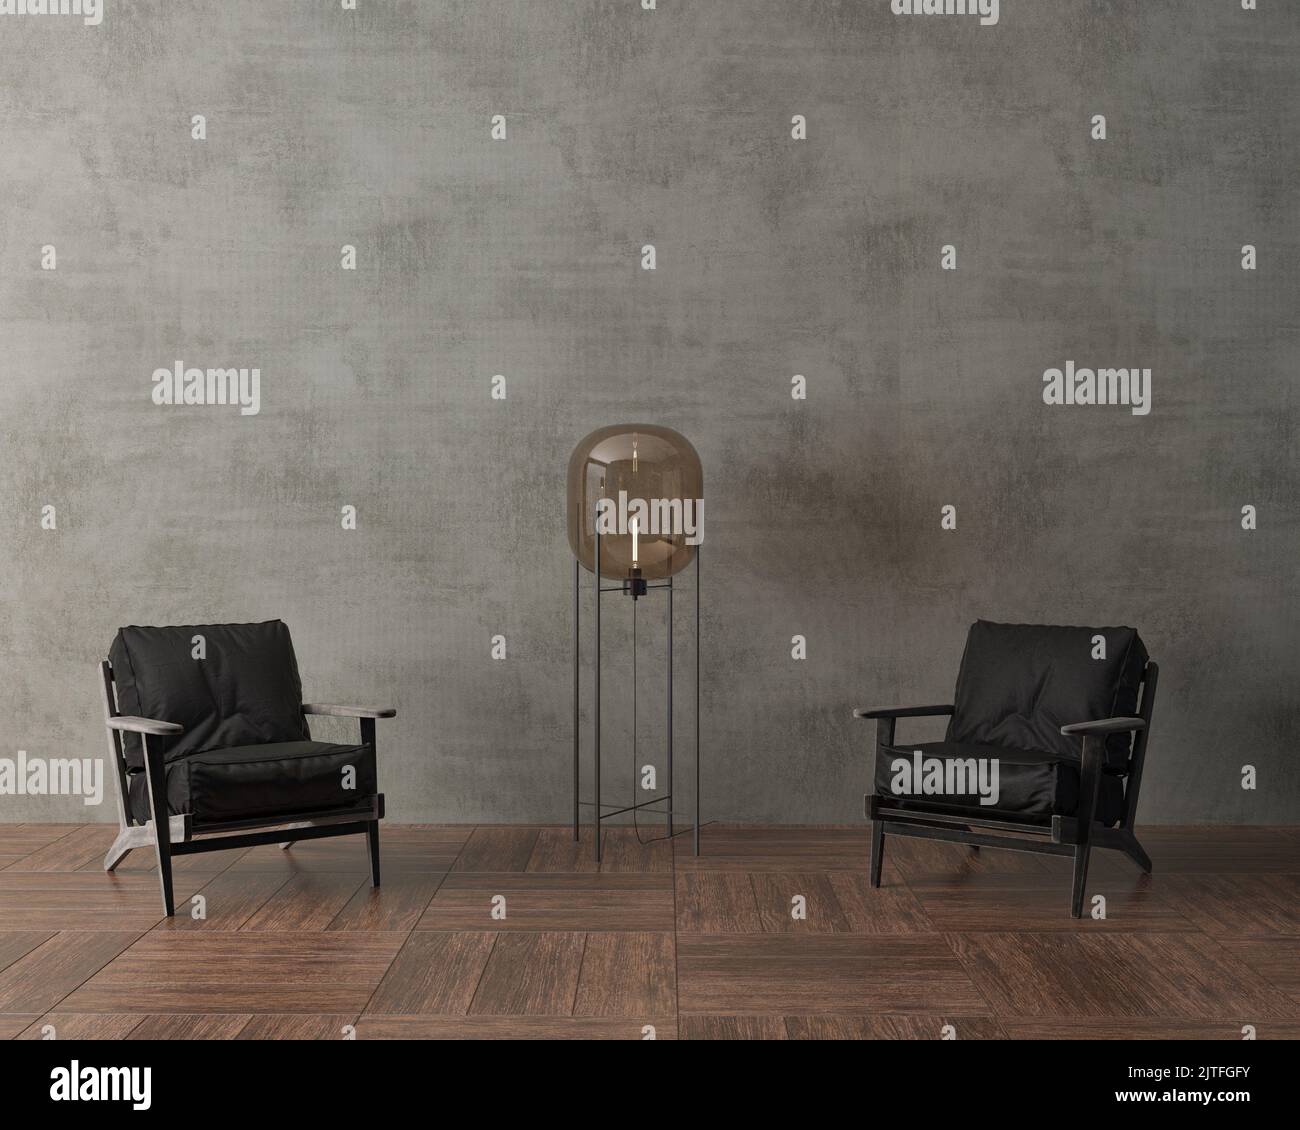 3d illustration. Décoration élégante de style loft avec mur en béton et deux fauteuils noirs. Lampe de plancher marron. Parquet. Banque D'Images